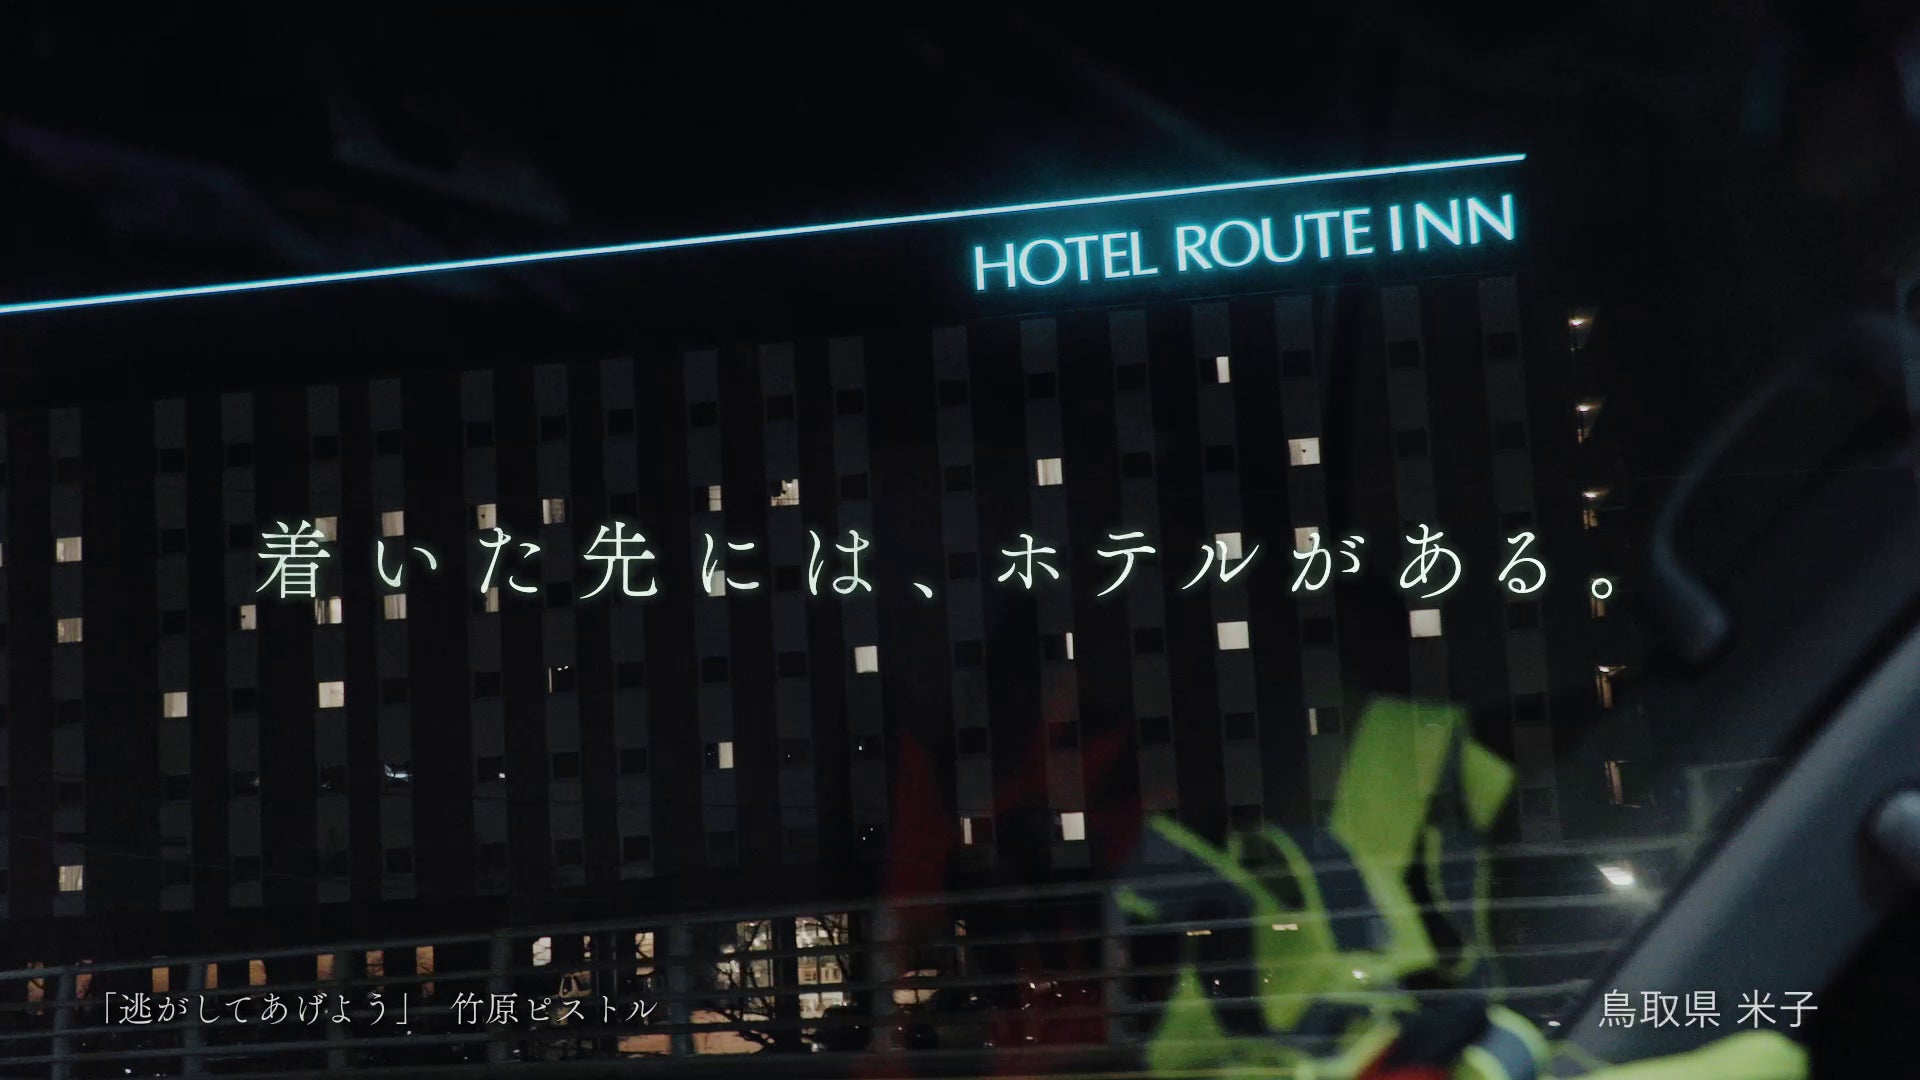 竹原ピストルがCMソングを書き下ろした「ルートインホテルズ新TVCM」を４月１日より全国放映開始！